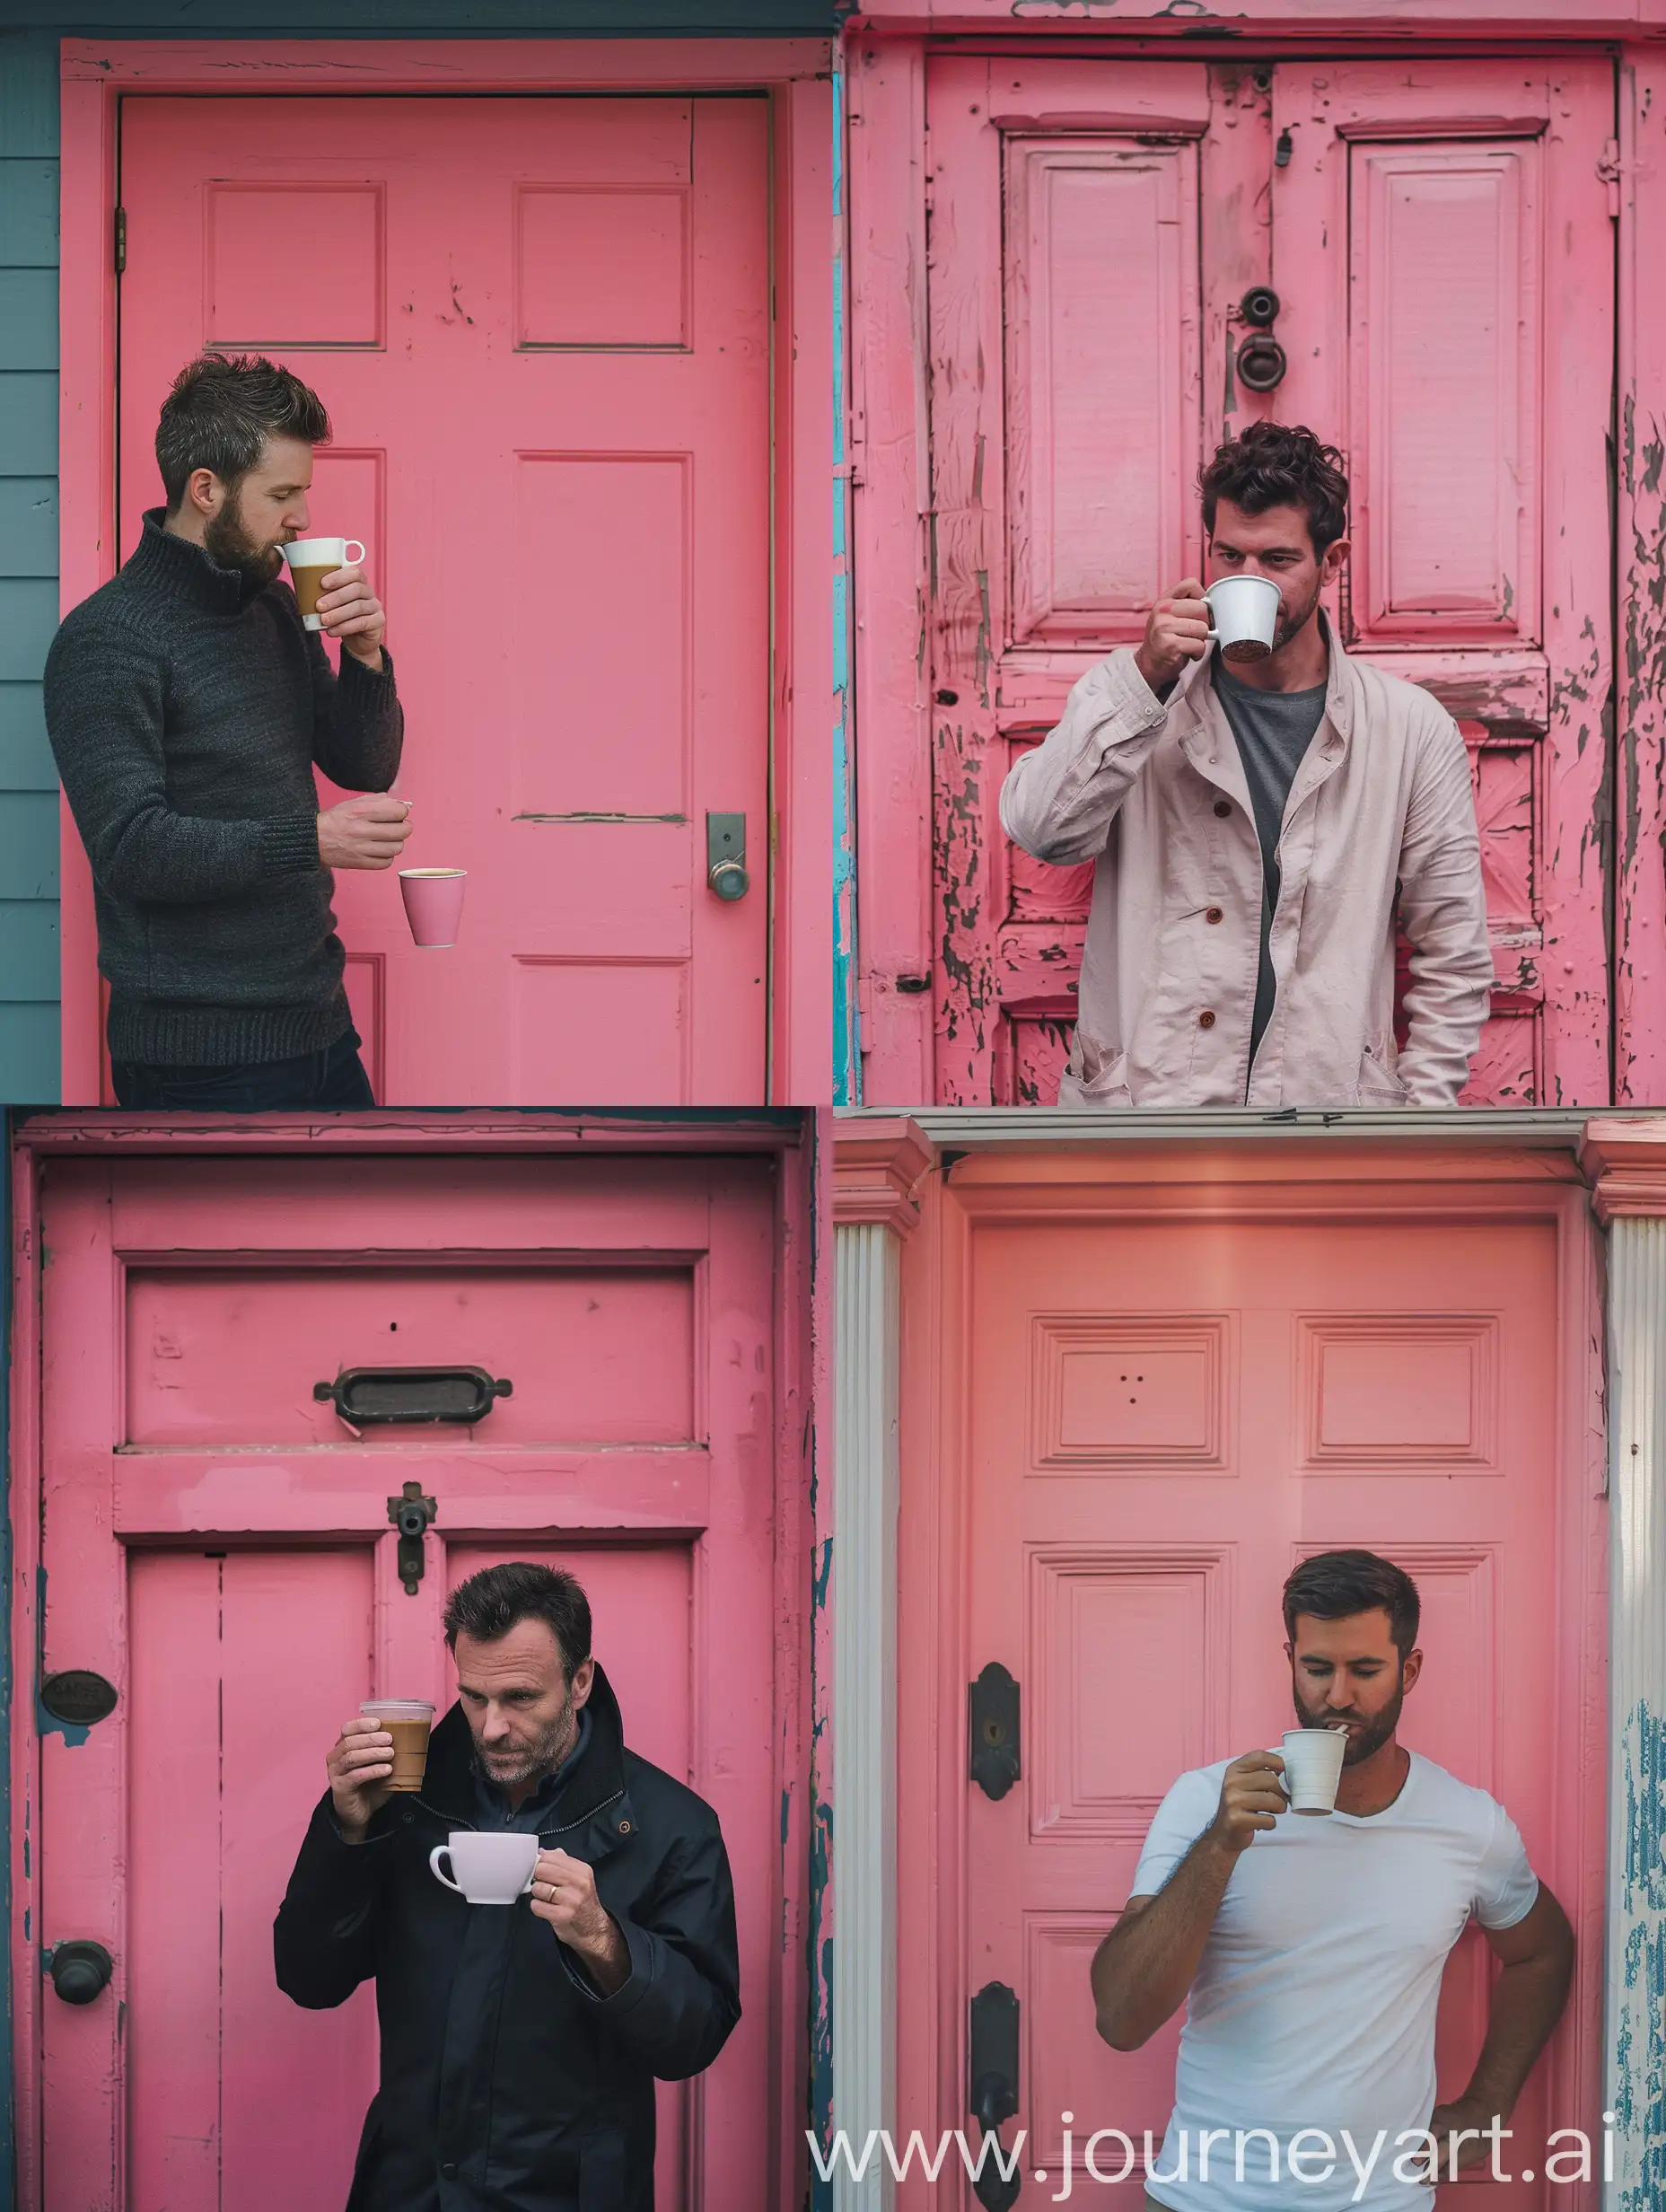 A man drink coffee on the door the color door is pink